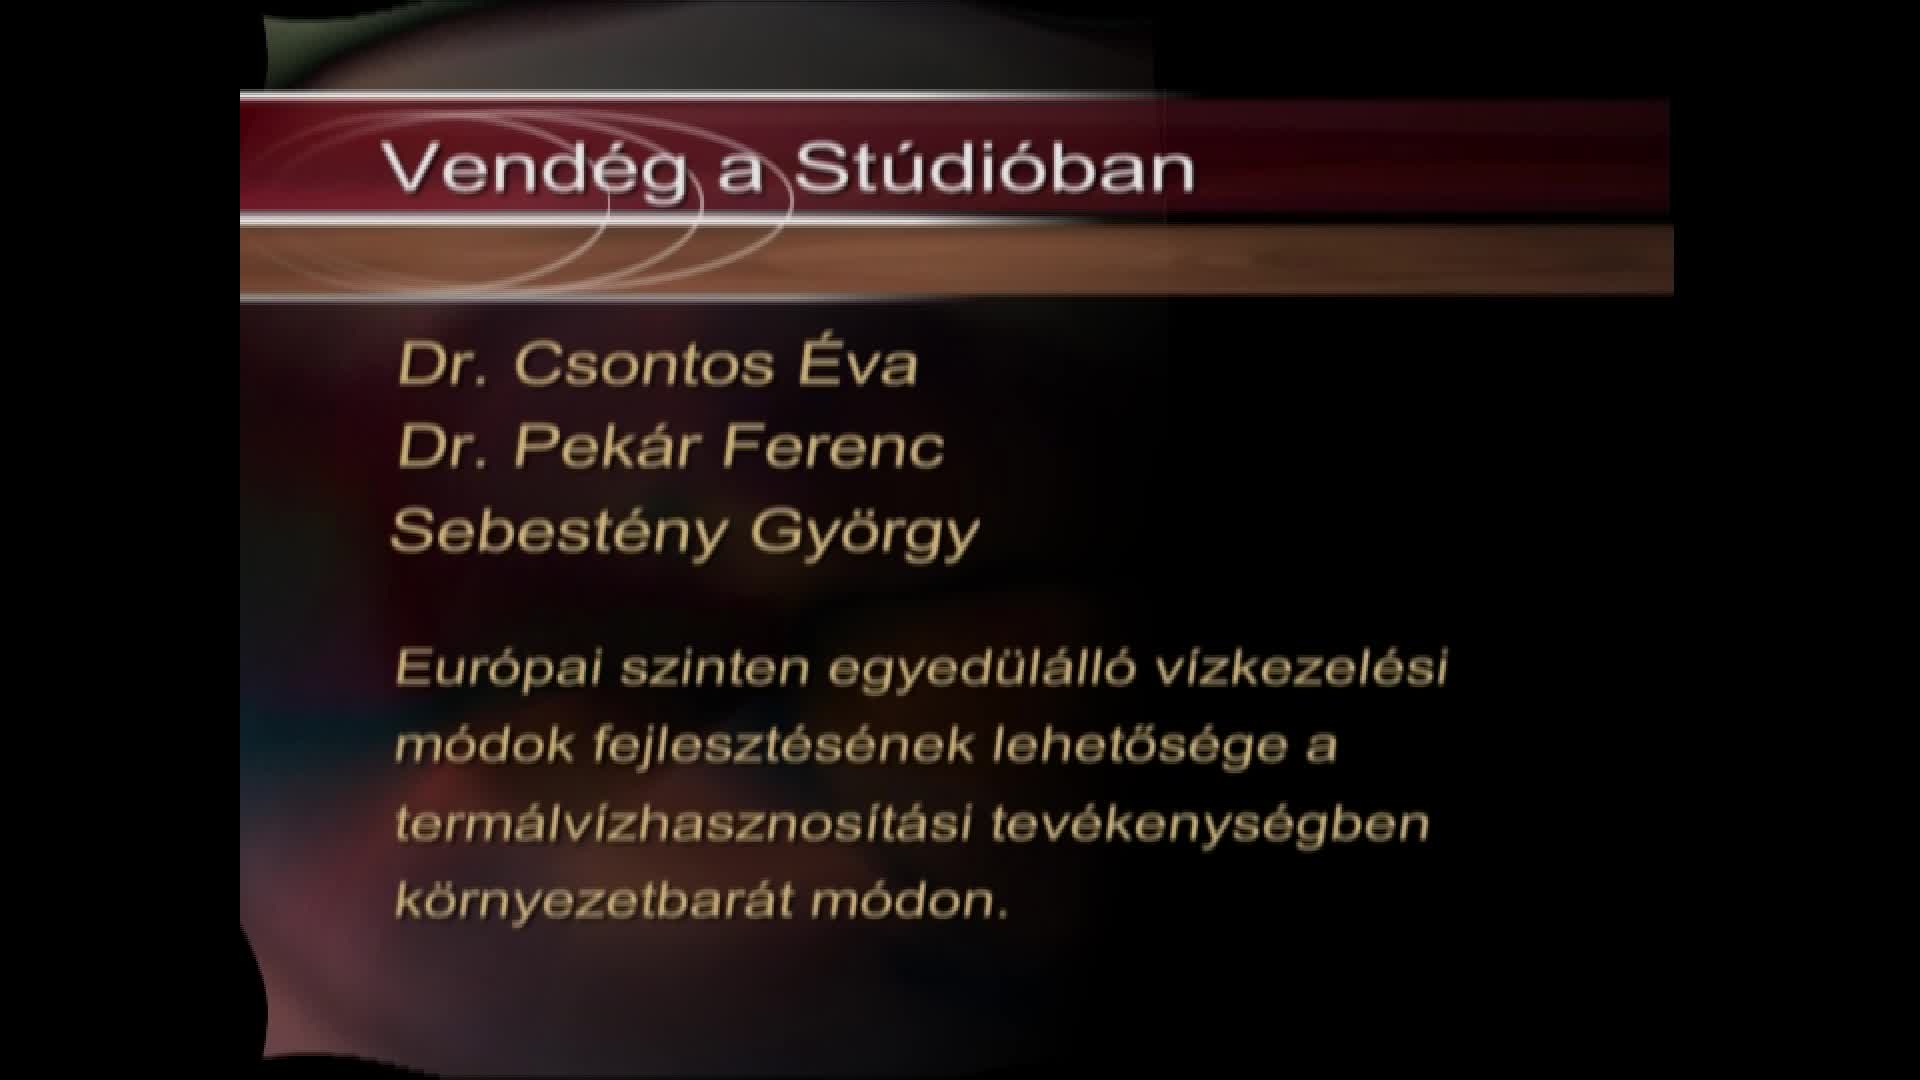 Vendég a stúdióban: Dr. Csontos Éva, Dr. Pekár Ferenc és Sebestyén György